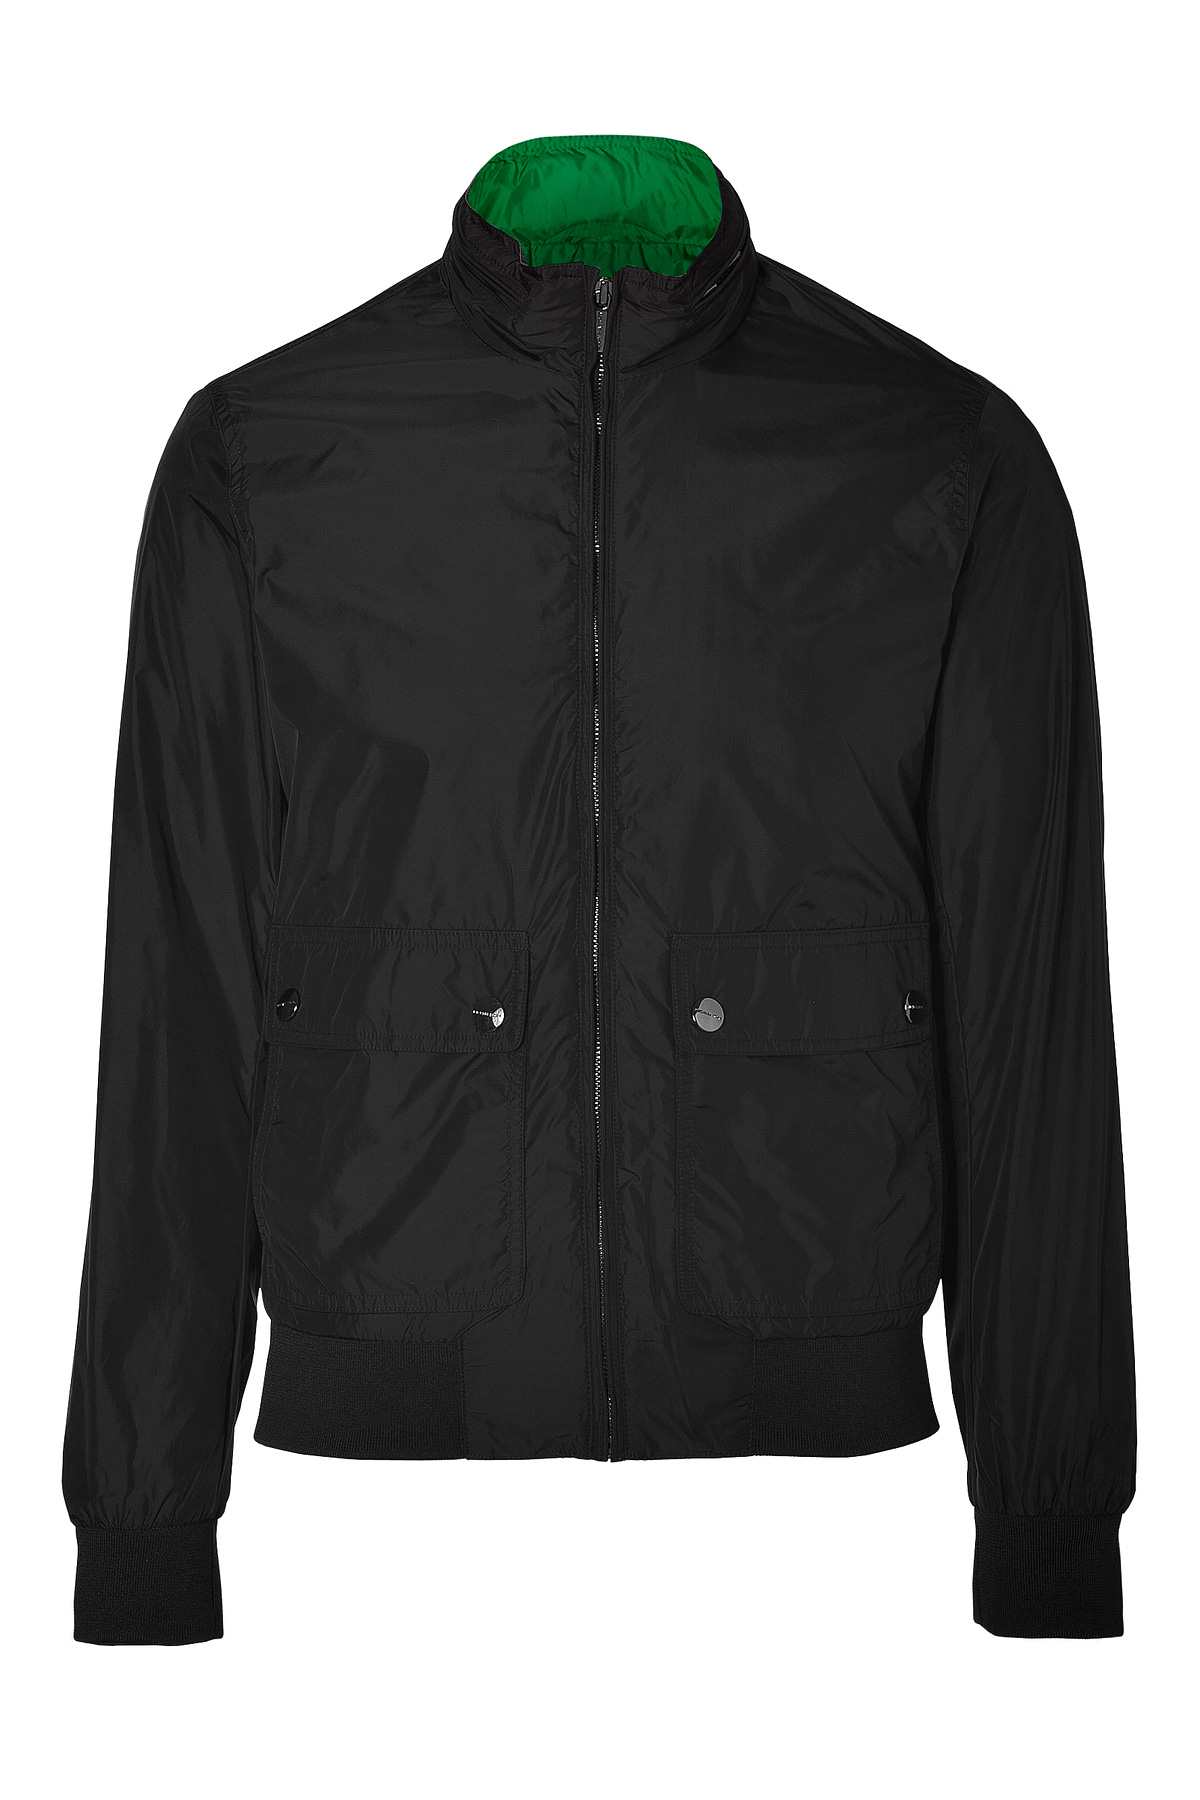 Michael Kors Black Nylon Bomber Jacket in Black for Men | Lyst